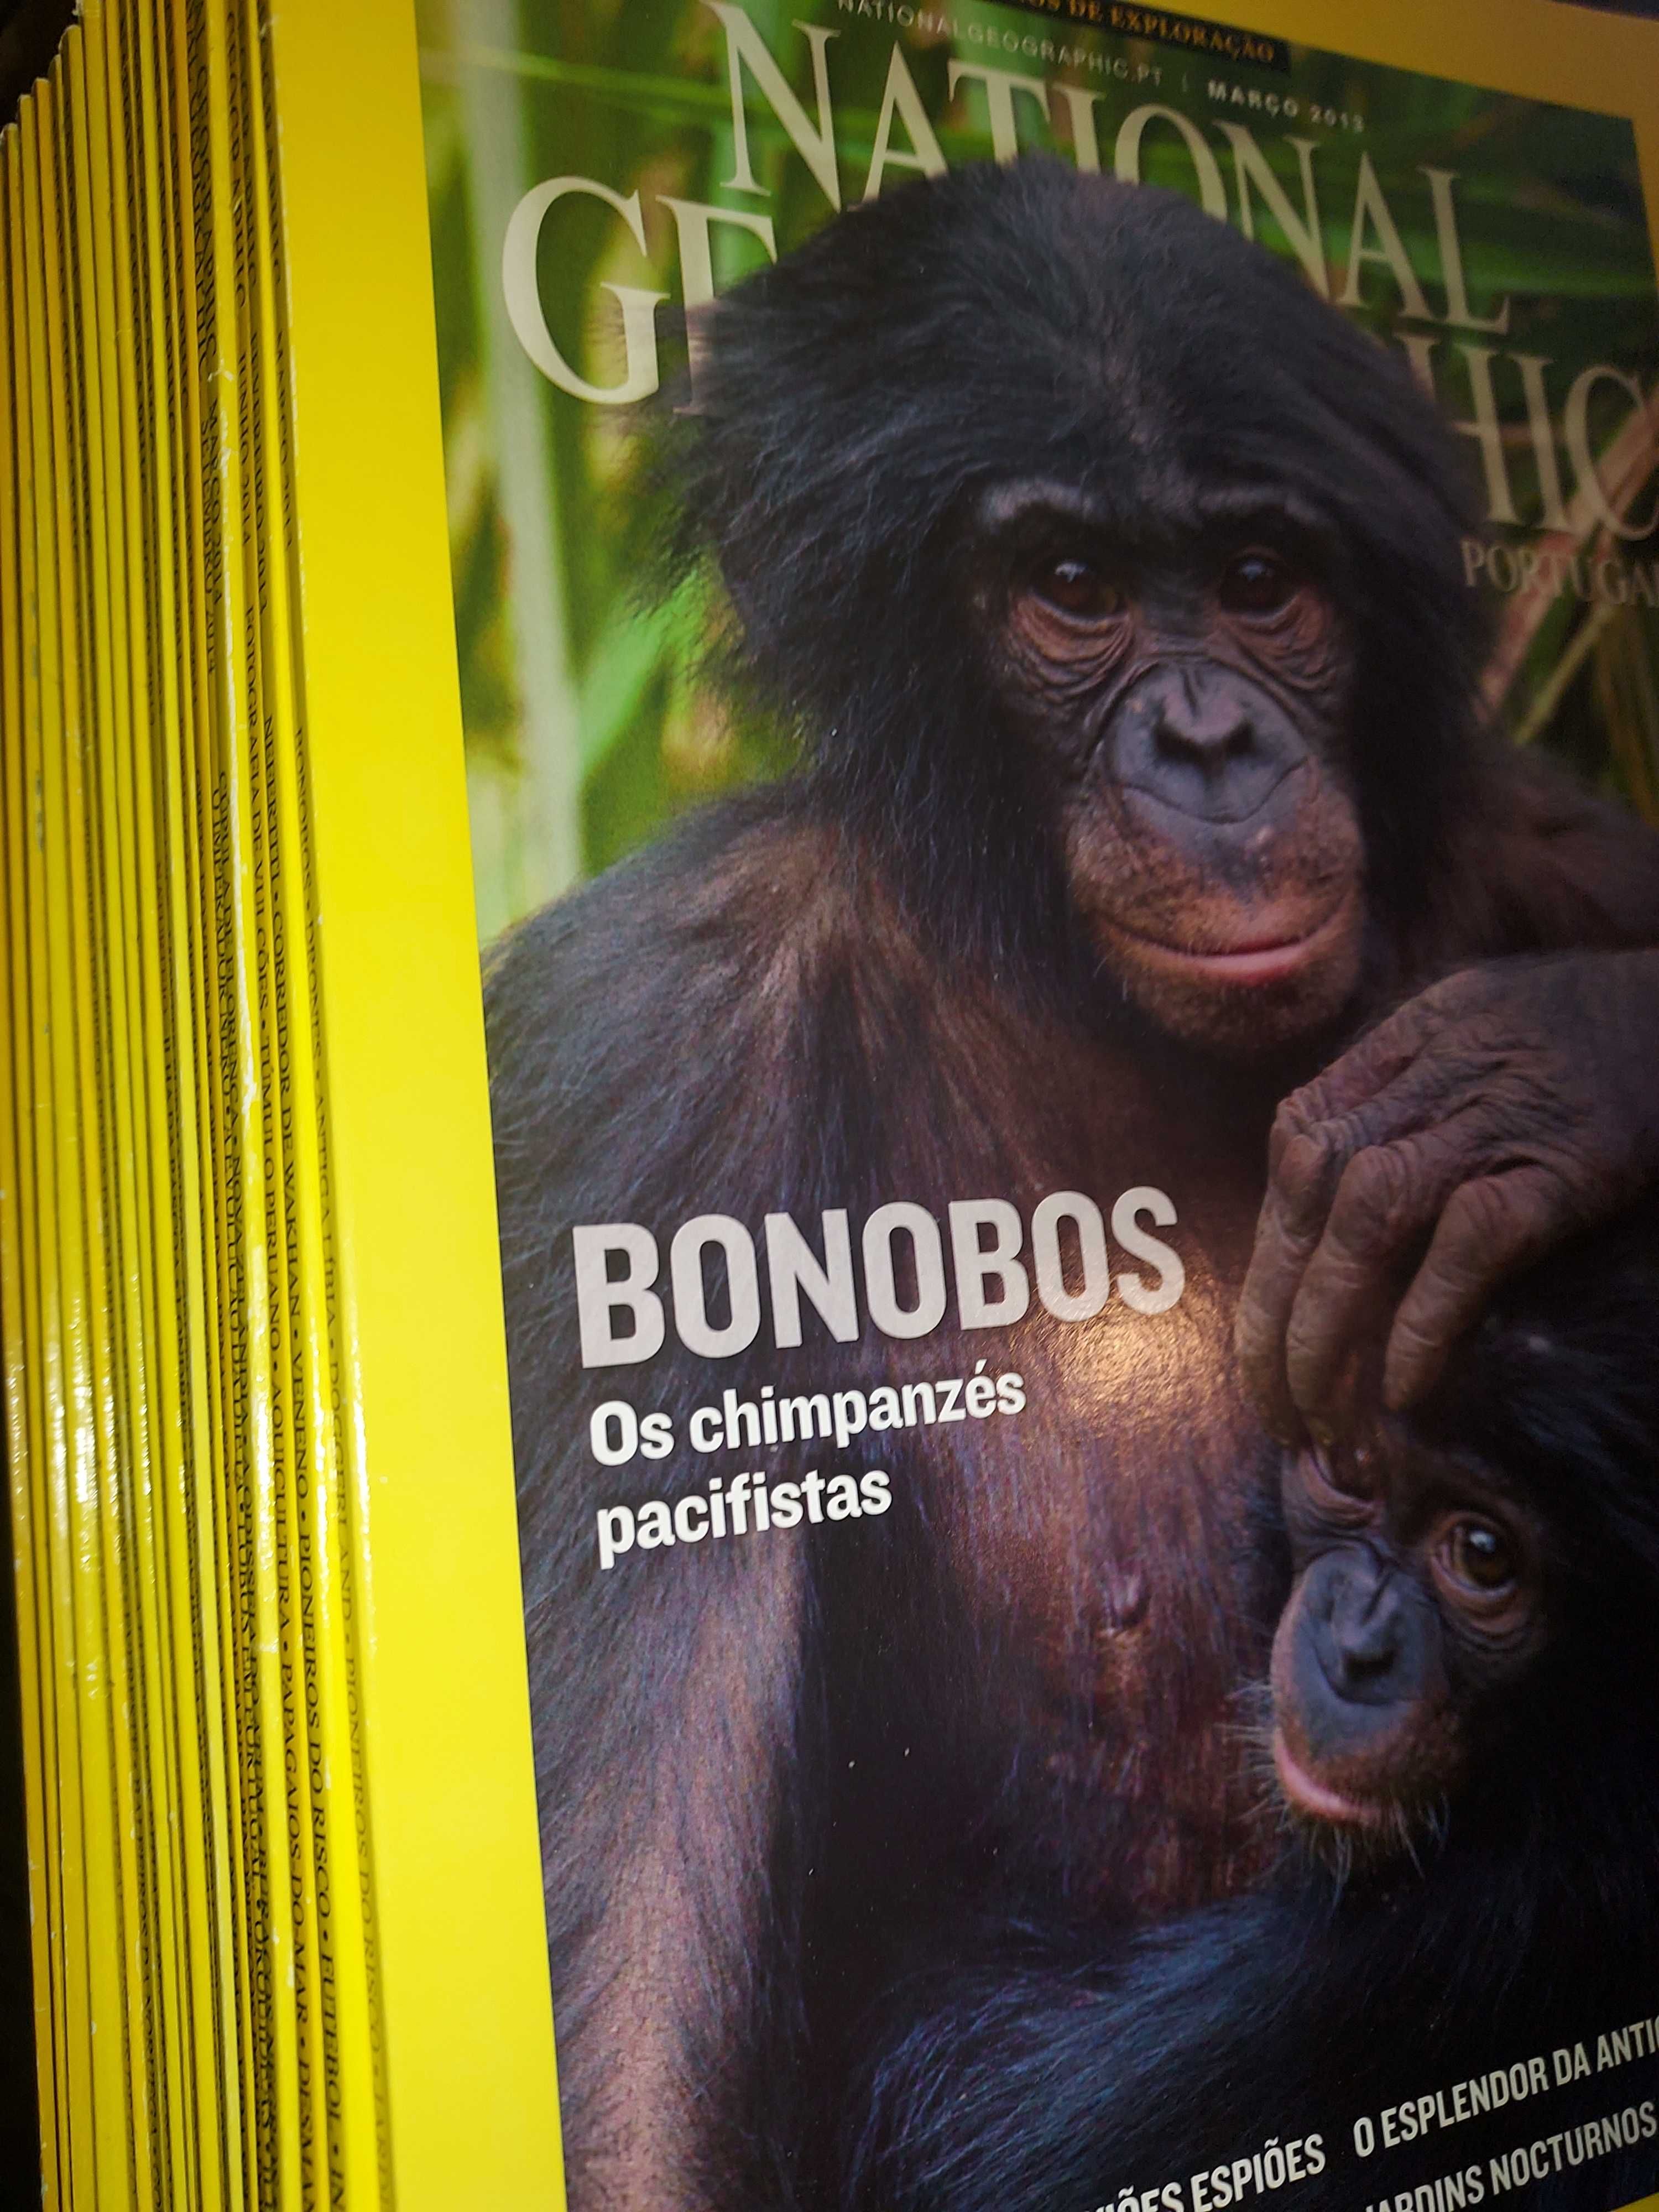 Revistas National Geographic Portugal - VEJA AQUI AS SUAS FALTAS